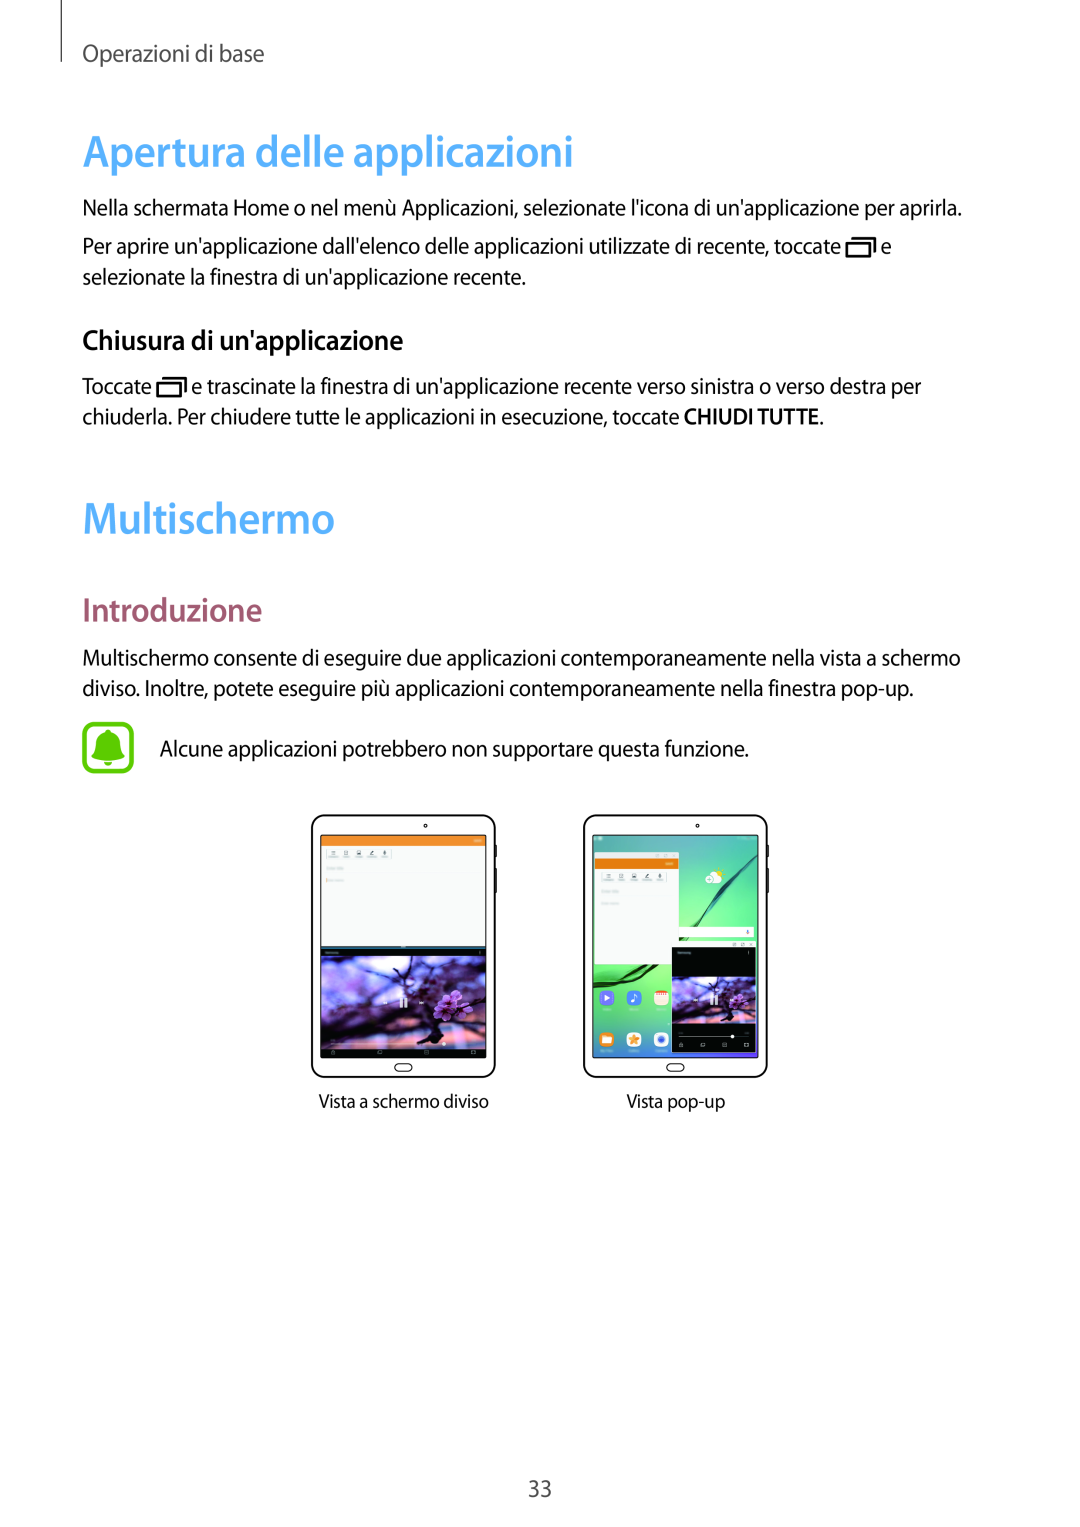 Samsung SM-T810NZDEPHN, SM-T810NZWEPHN Apertura delle applicazioni, Multischermo, Introduzione, Chiusura di unapplicazione 